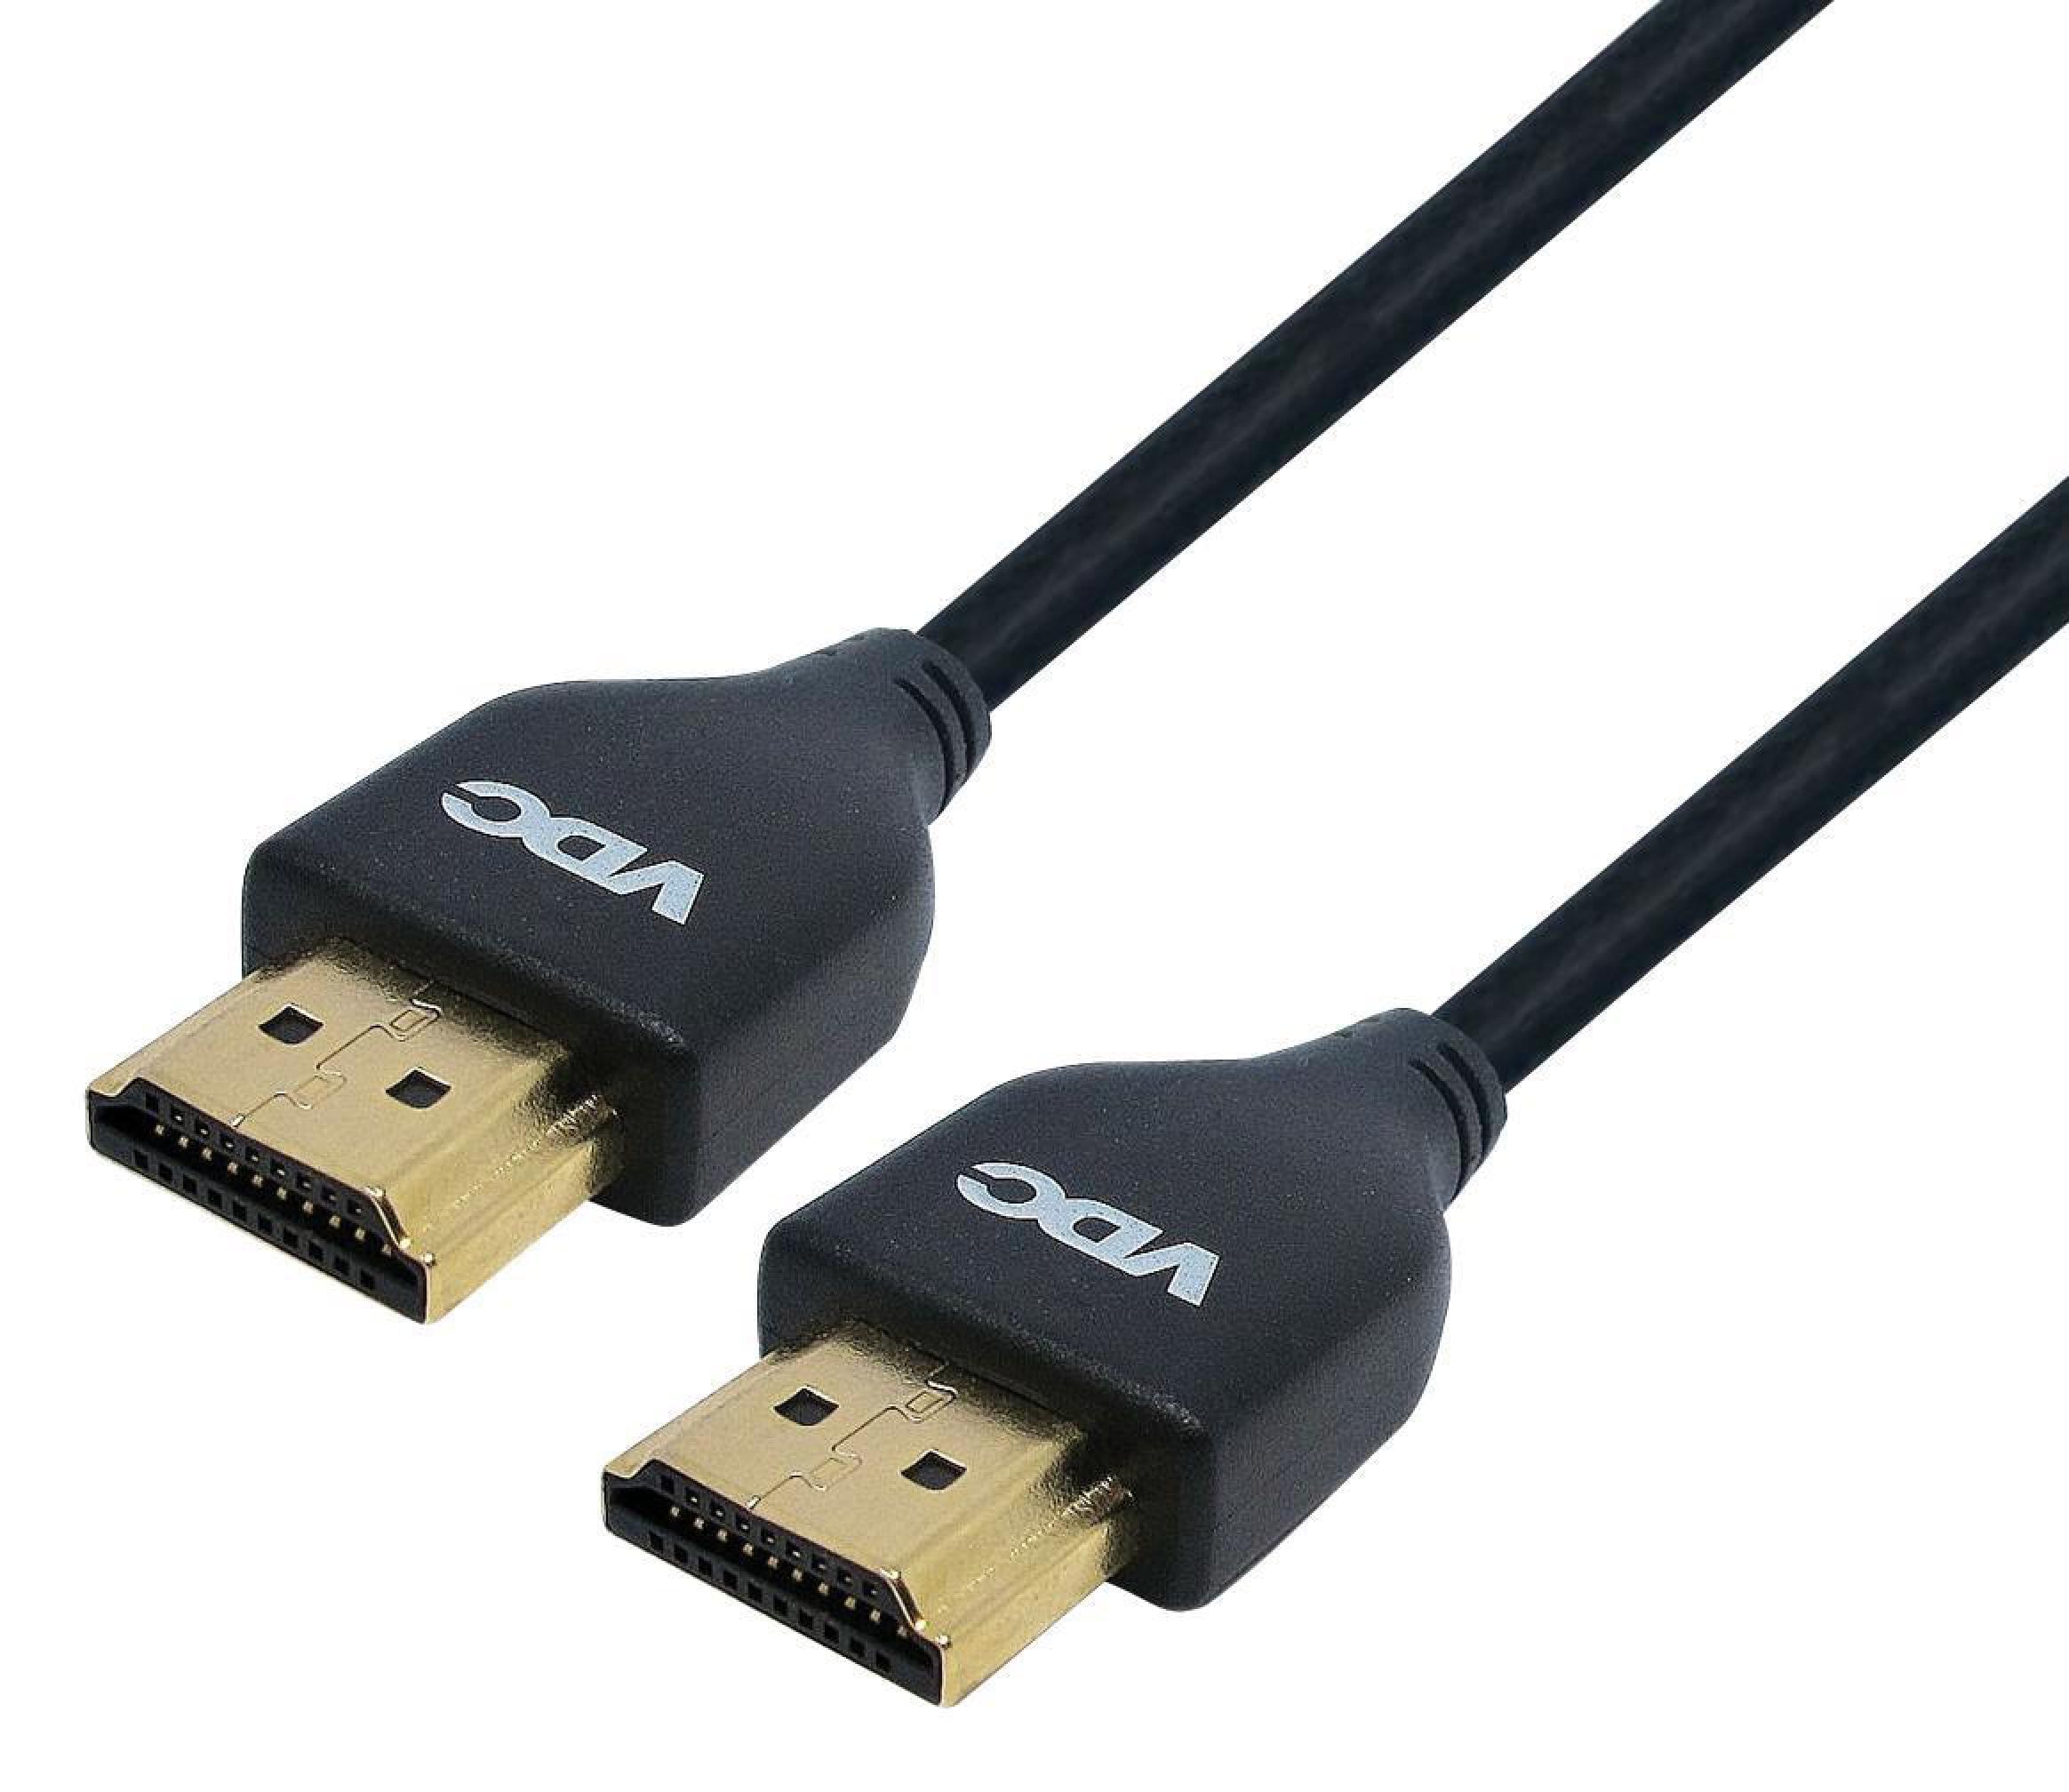 Câble plat HDMI [7m Lead] Connecteurs TV inclinés Ultra haute